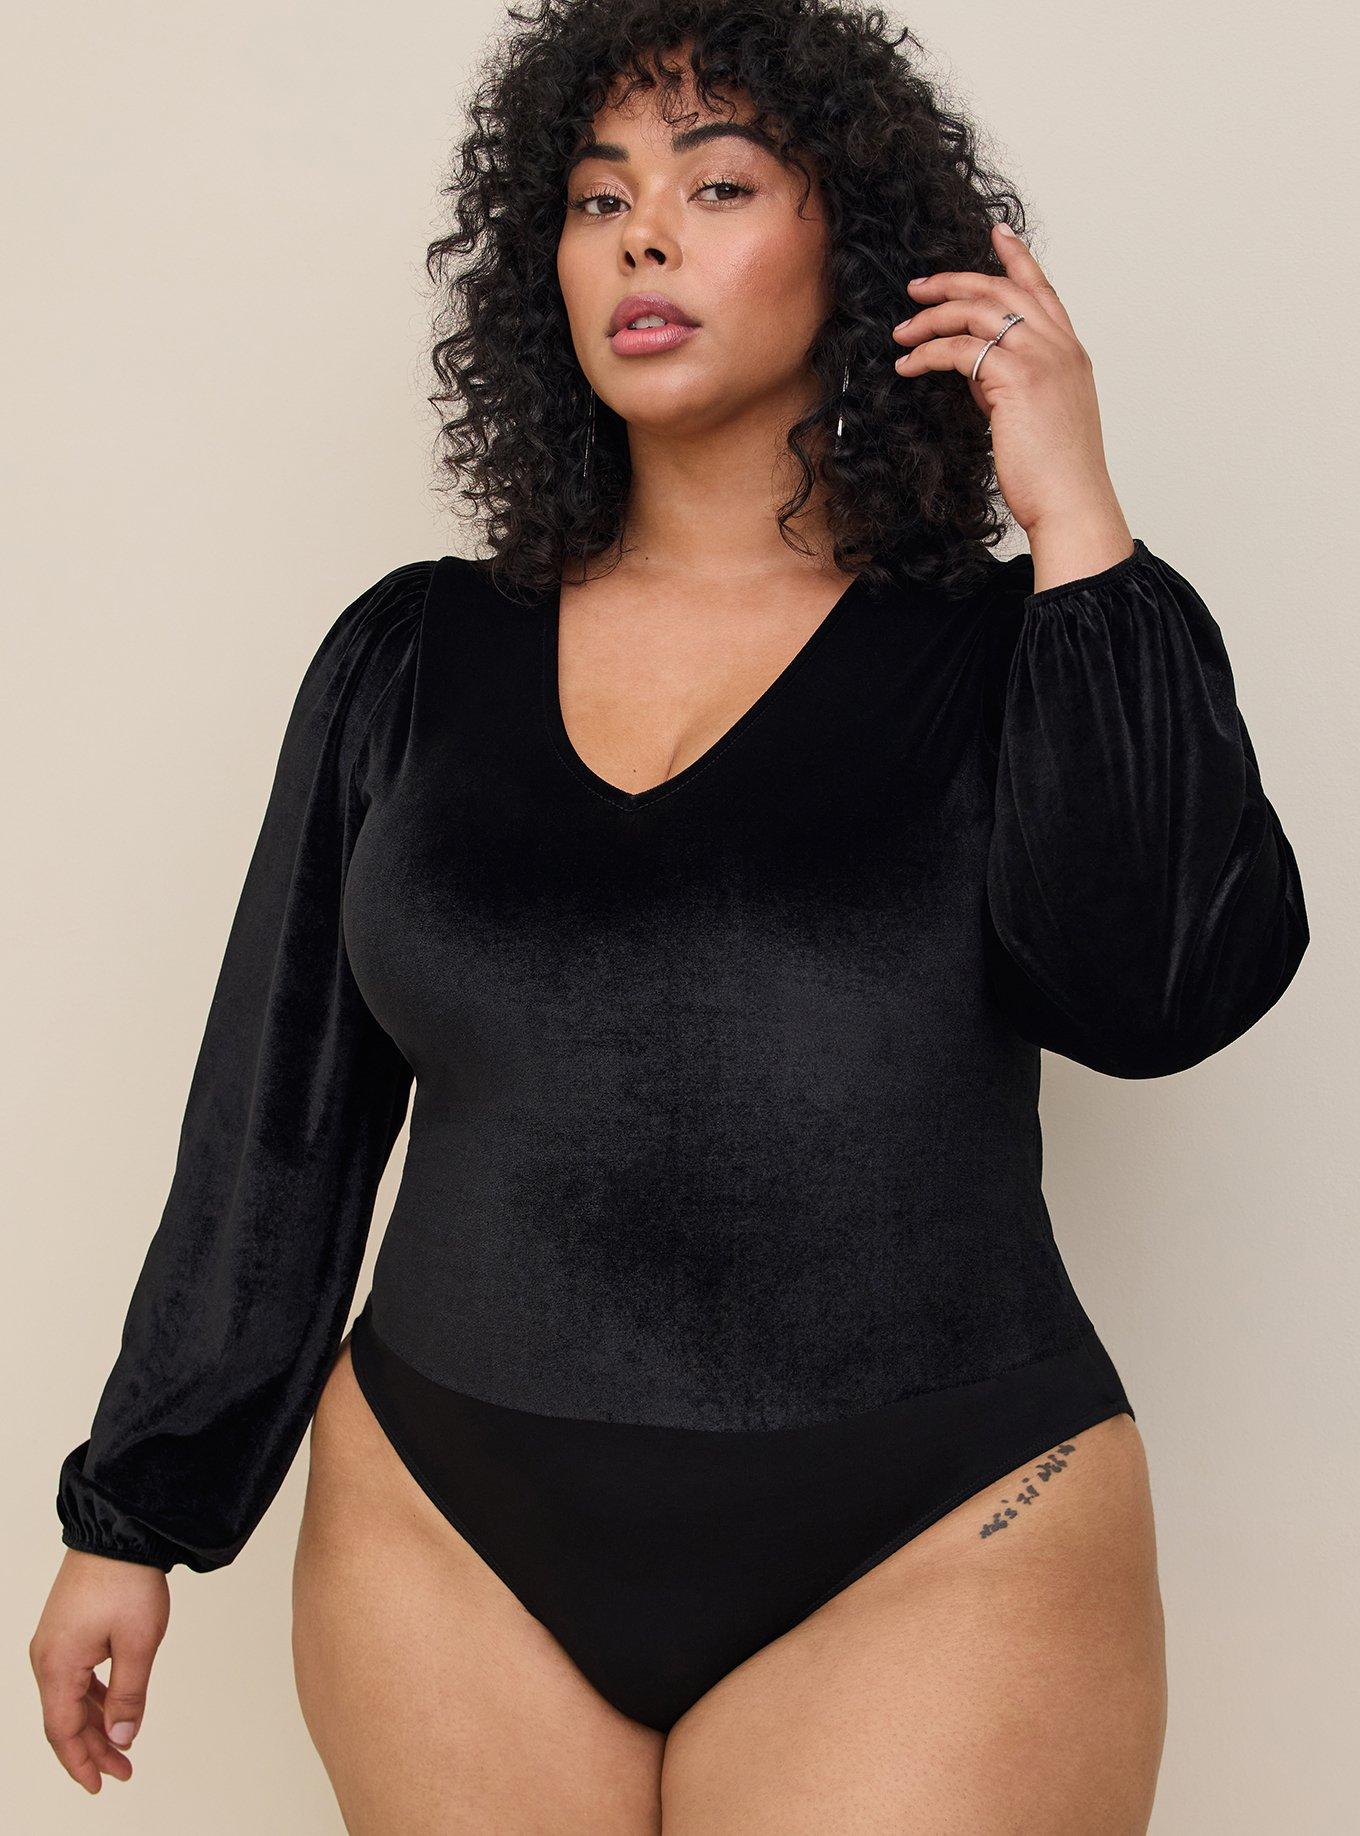 Plus Size - Super Soft Black Lace Bodysuit - Torrid